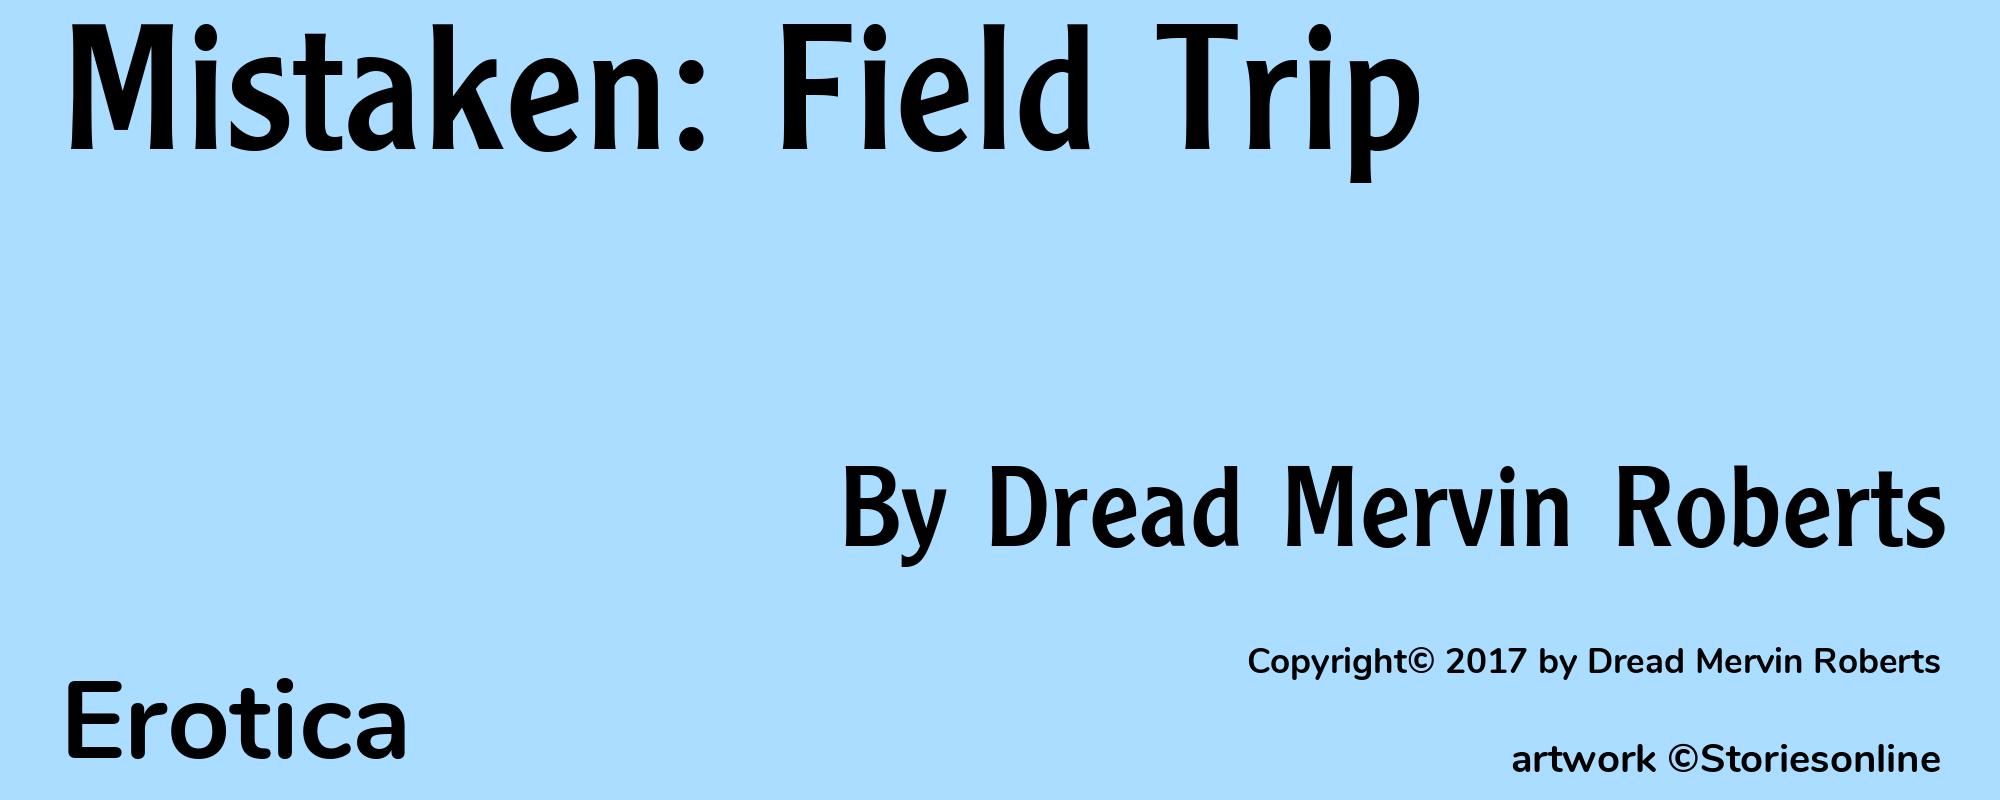 Mistaken: Field Trip - Cover